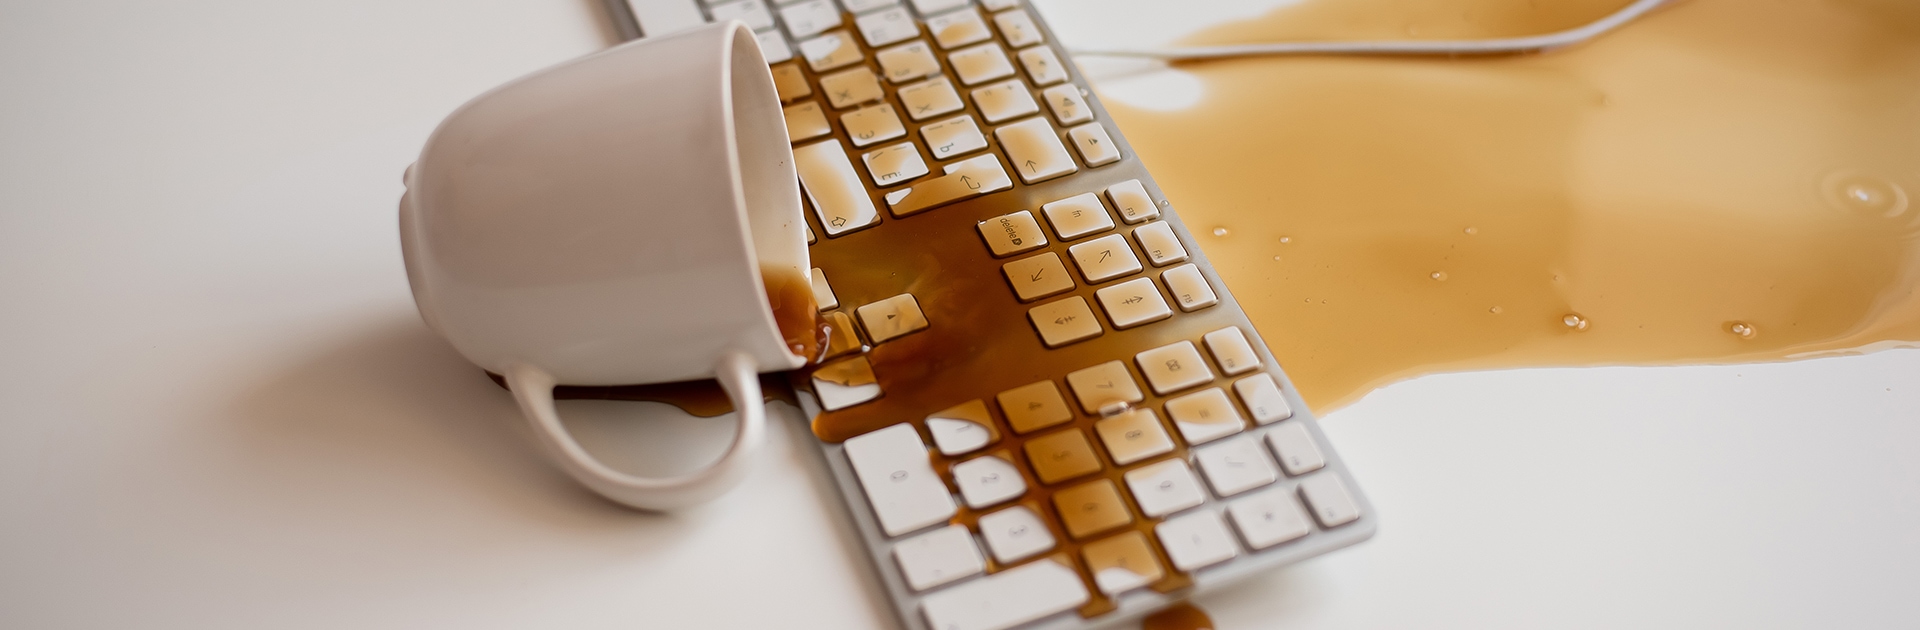 Kaffee läuft aus einer umgekippten Tasse über eine Tastatur